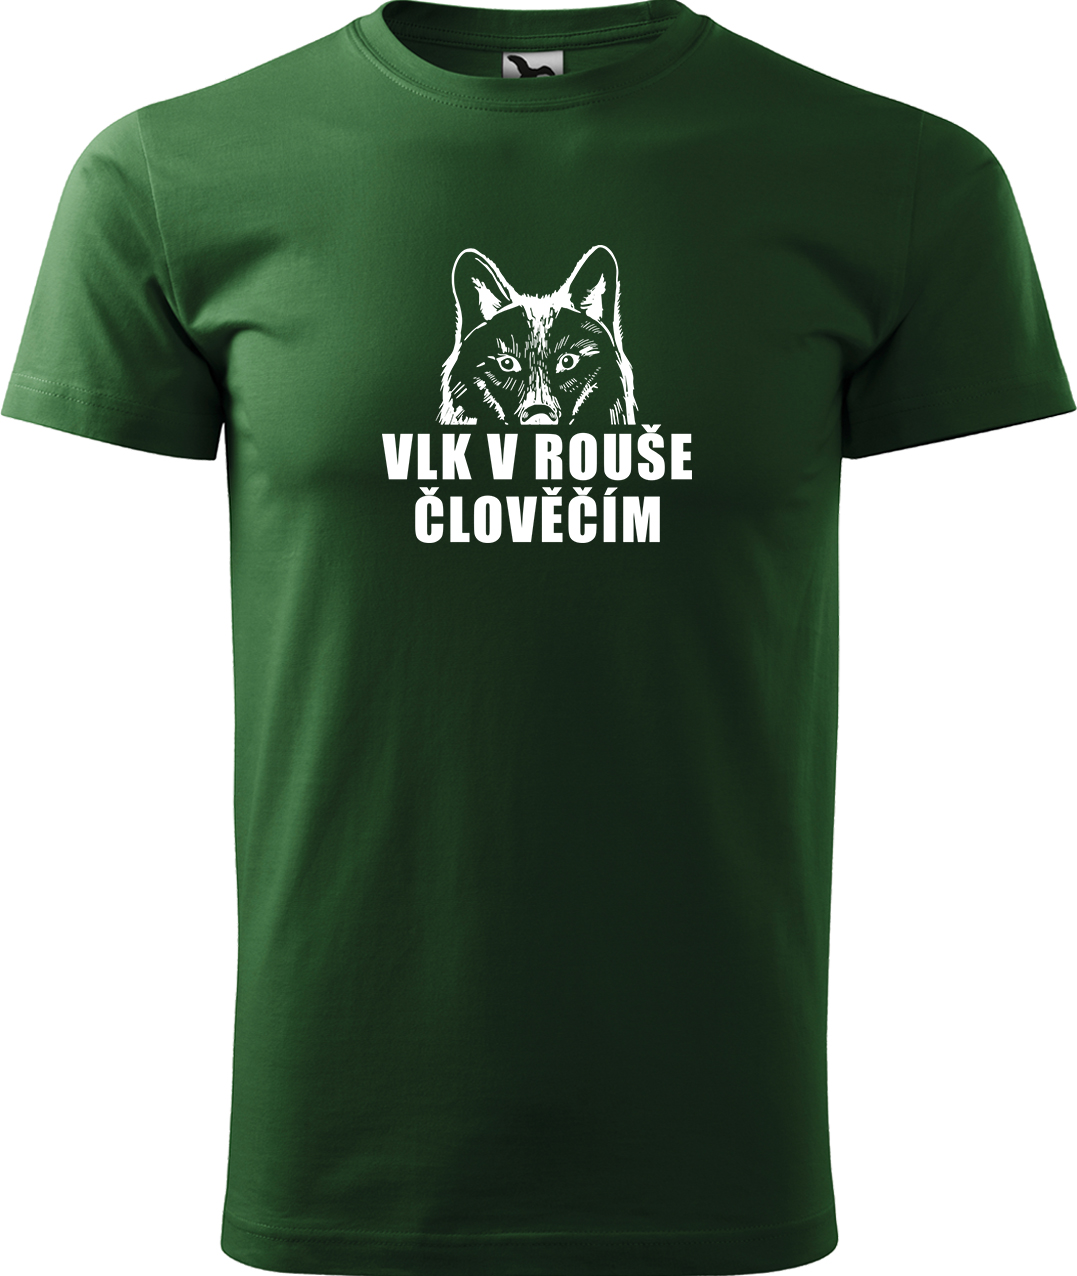 Pánské tričko s vlkem - Vlk v rouše člověčím Velikost: XL, Barva: Lahvově zelená (06), Střih: pánský